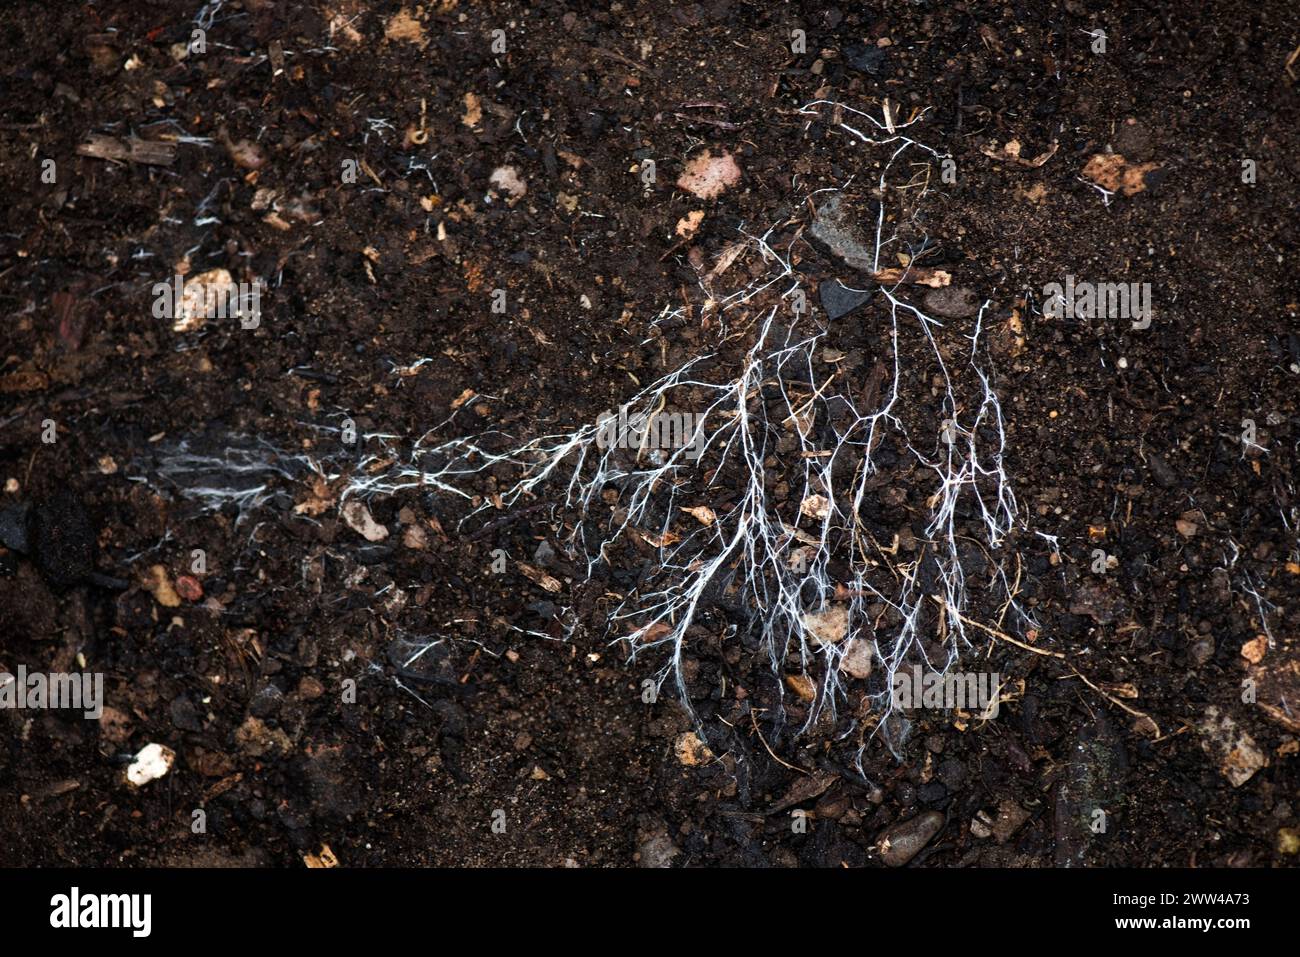 Fils ramifiés de mycélium champignon se répandant sur un sol organique. Un organisme symbiotique mycorhizien qui interagit avec les racines des plantes et des arbres, Berkshi Banque D'Images